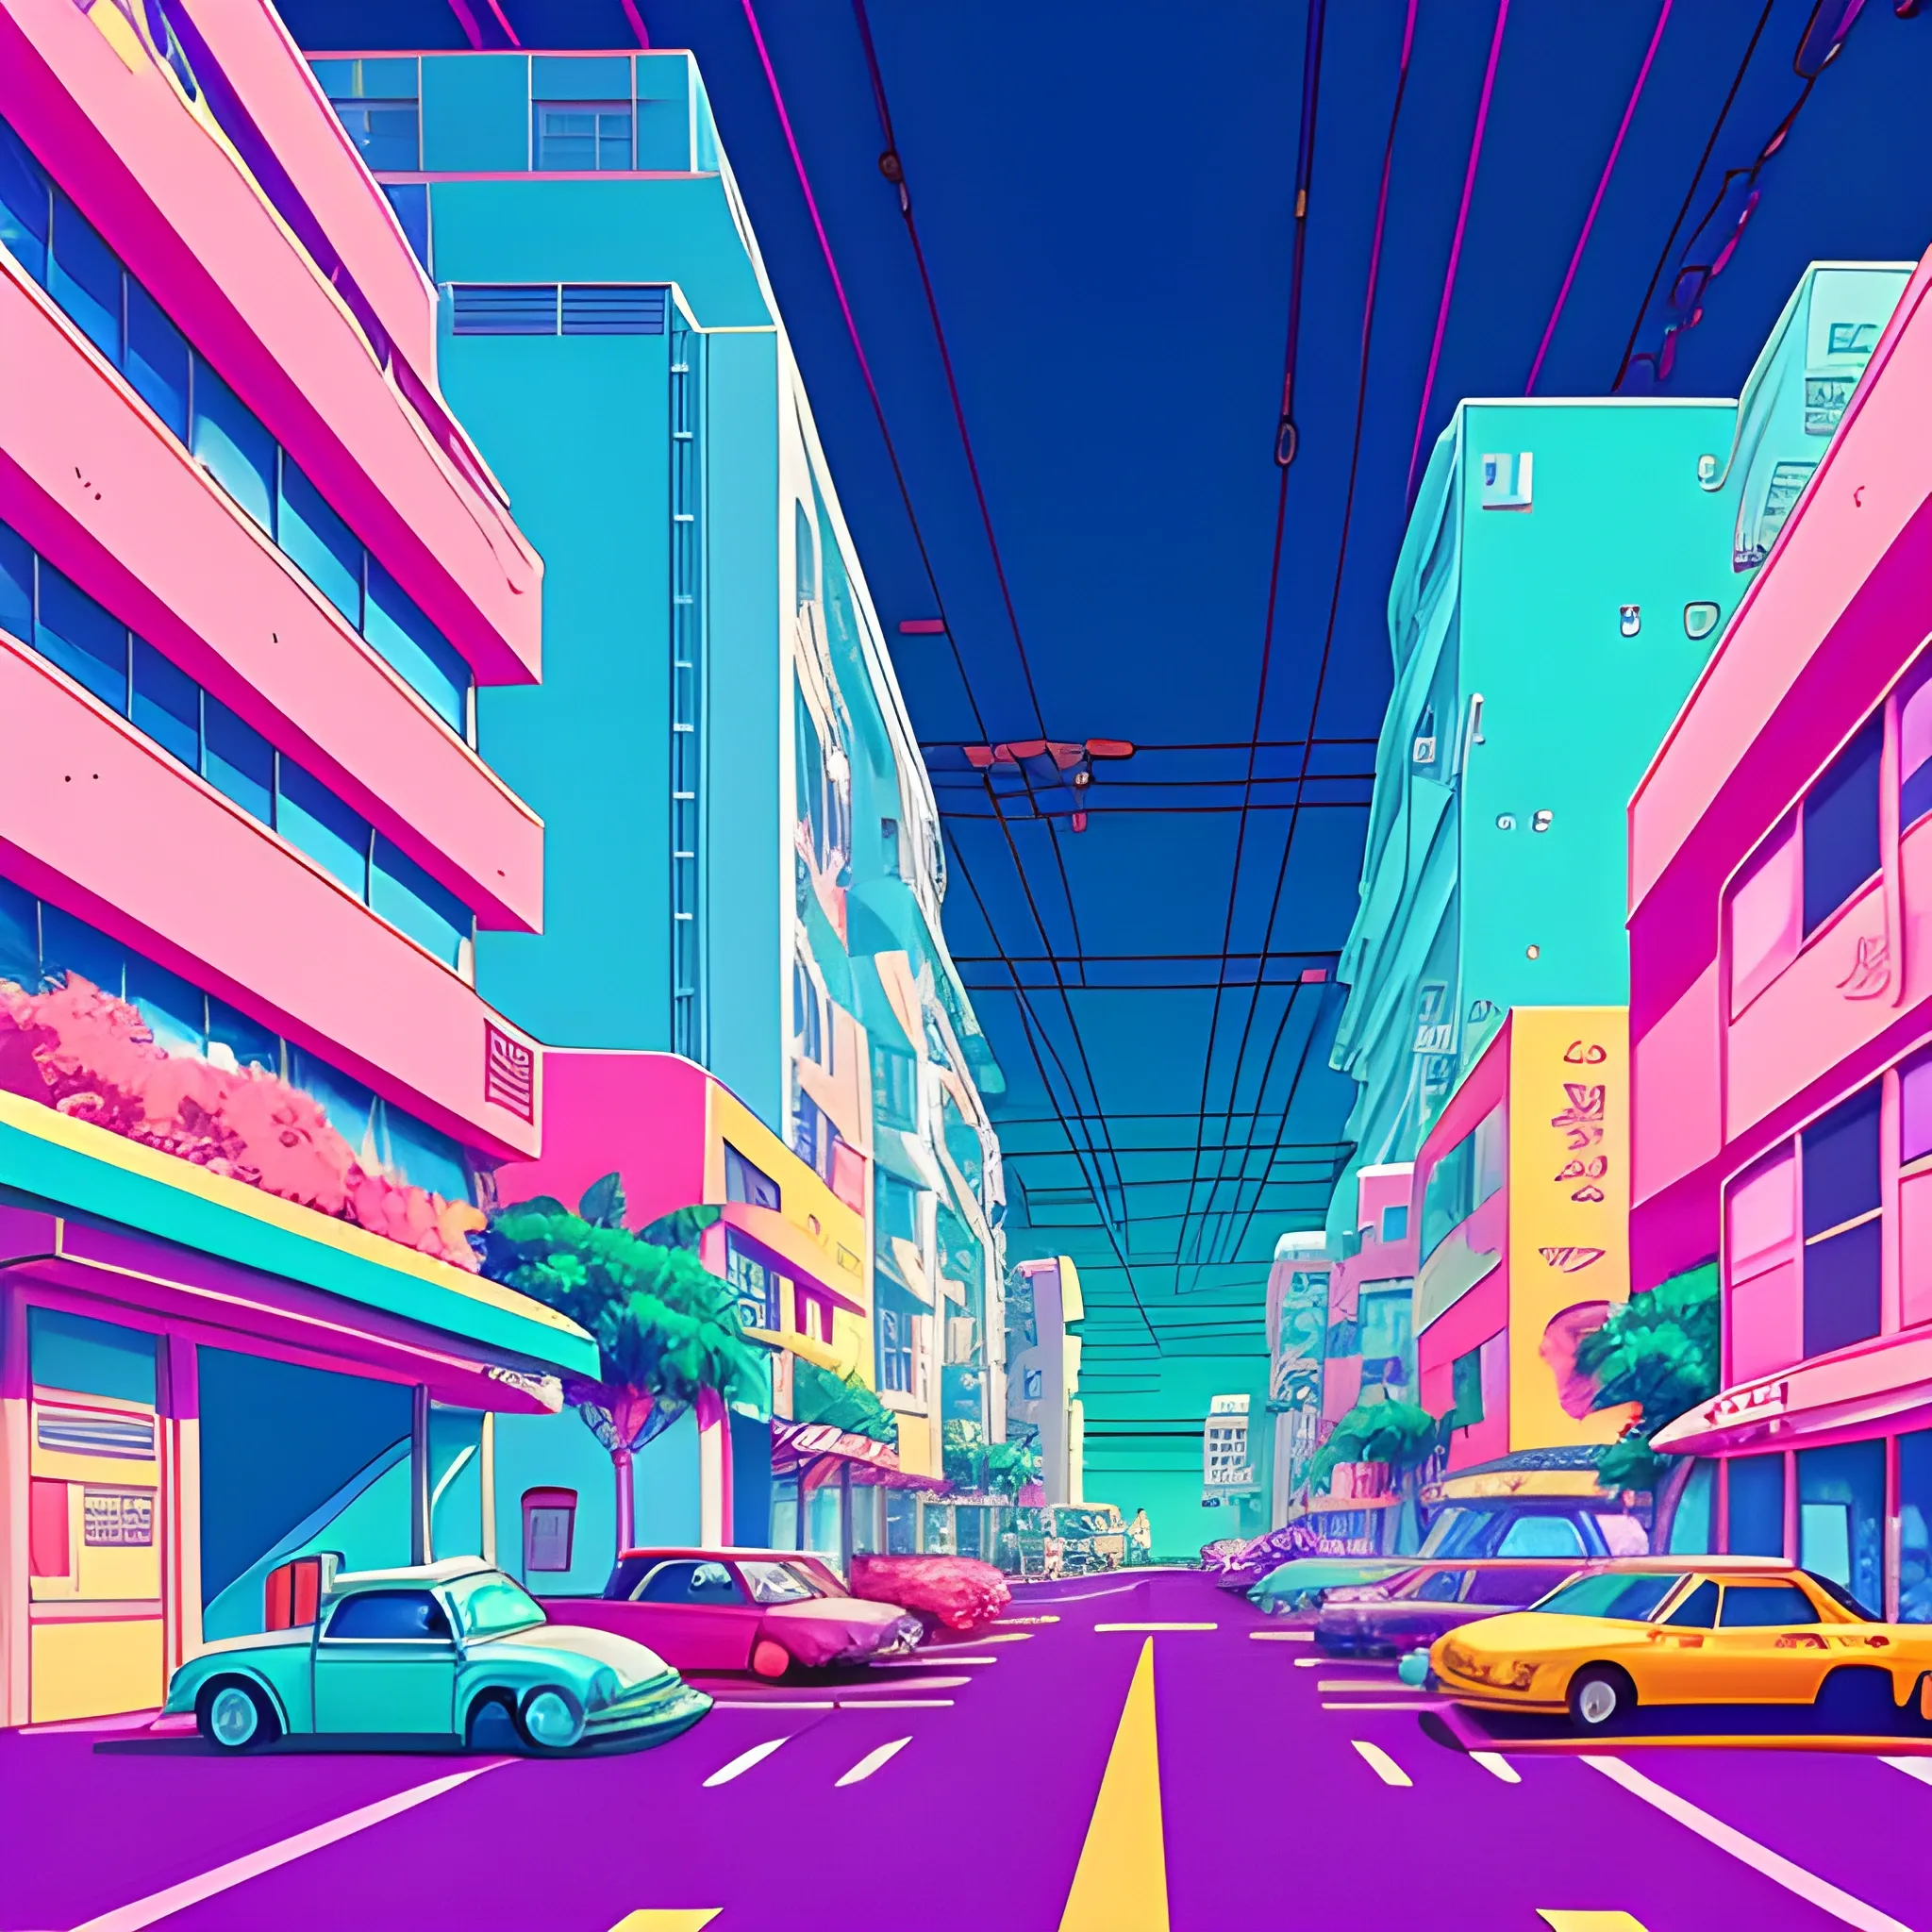 Neon Wave Futuristic City (3840 x 2160) : r/wallpaper